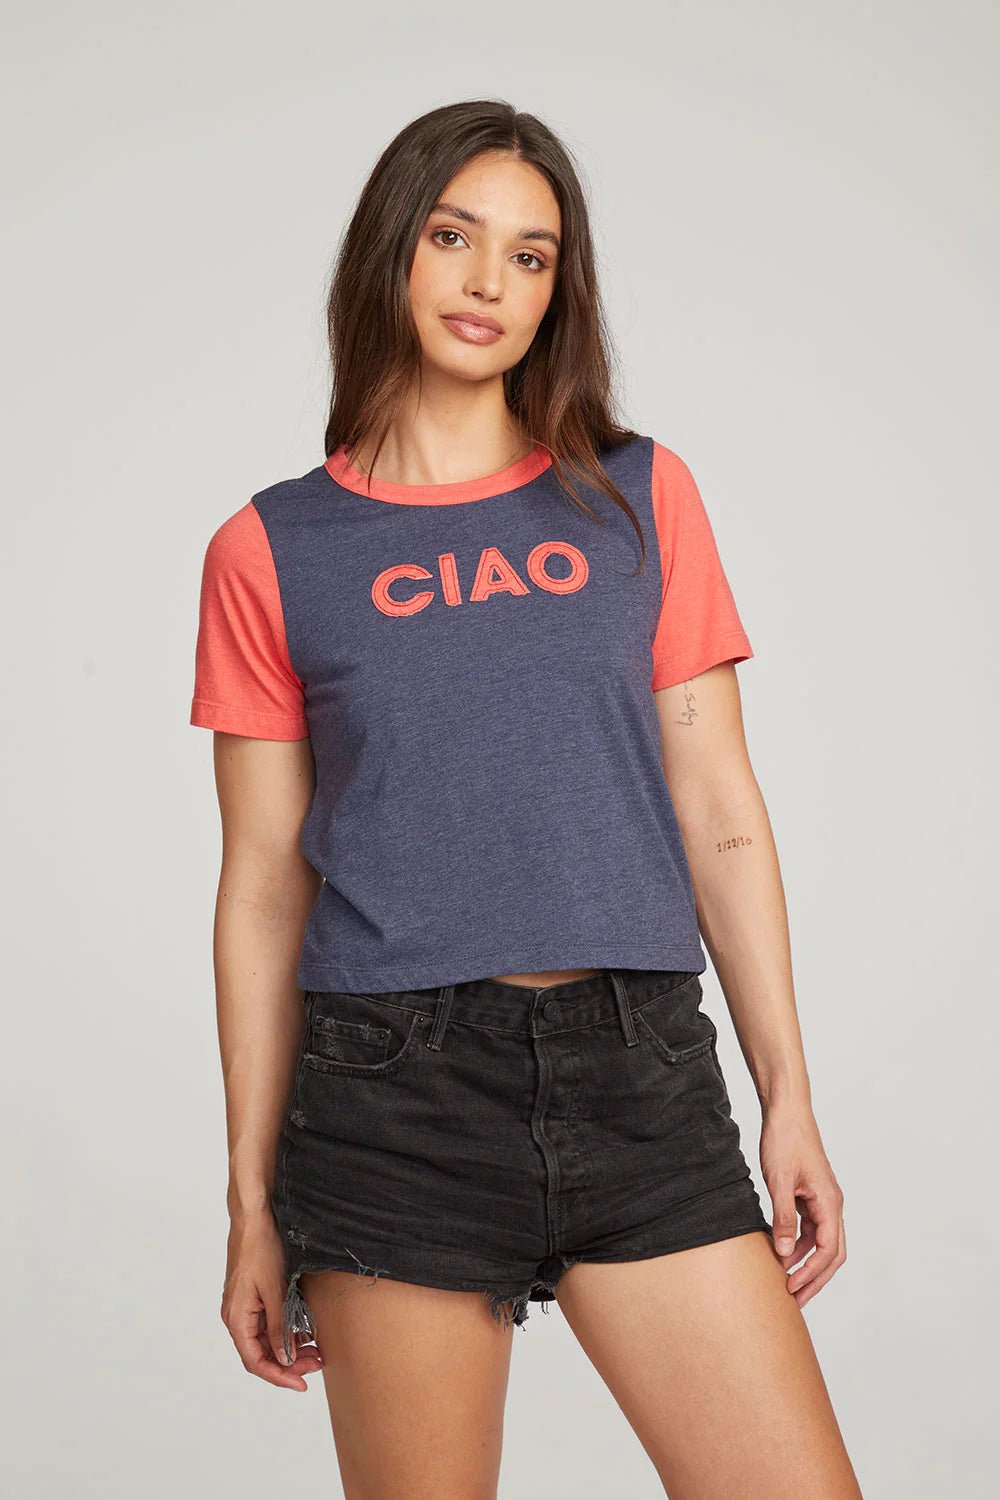 Ciao Shirt - Frock Shop